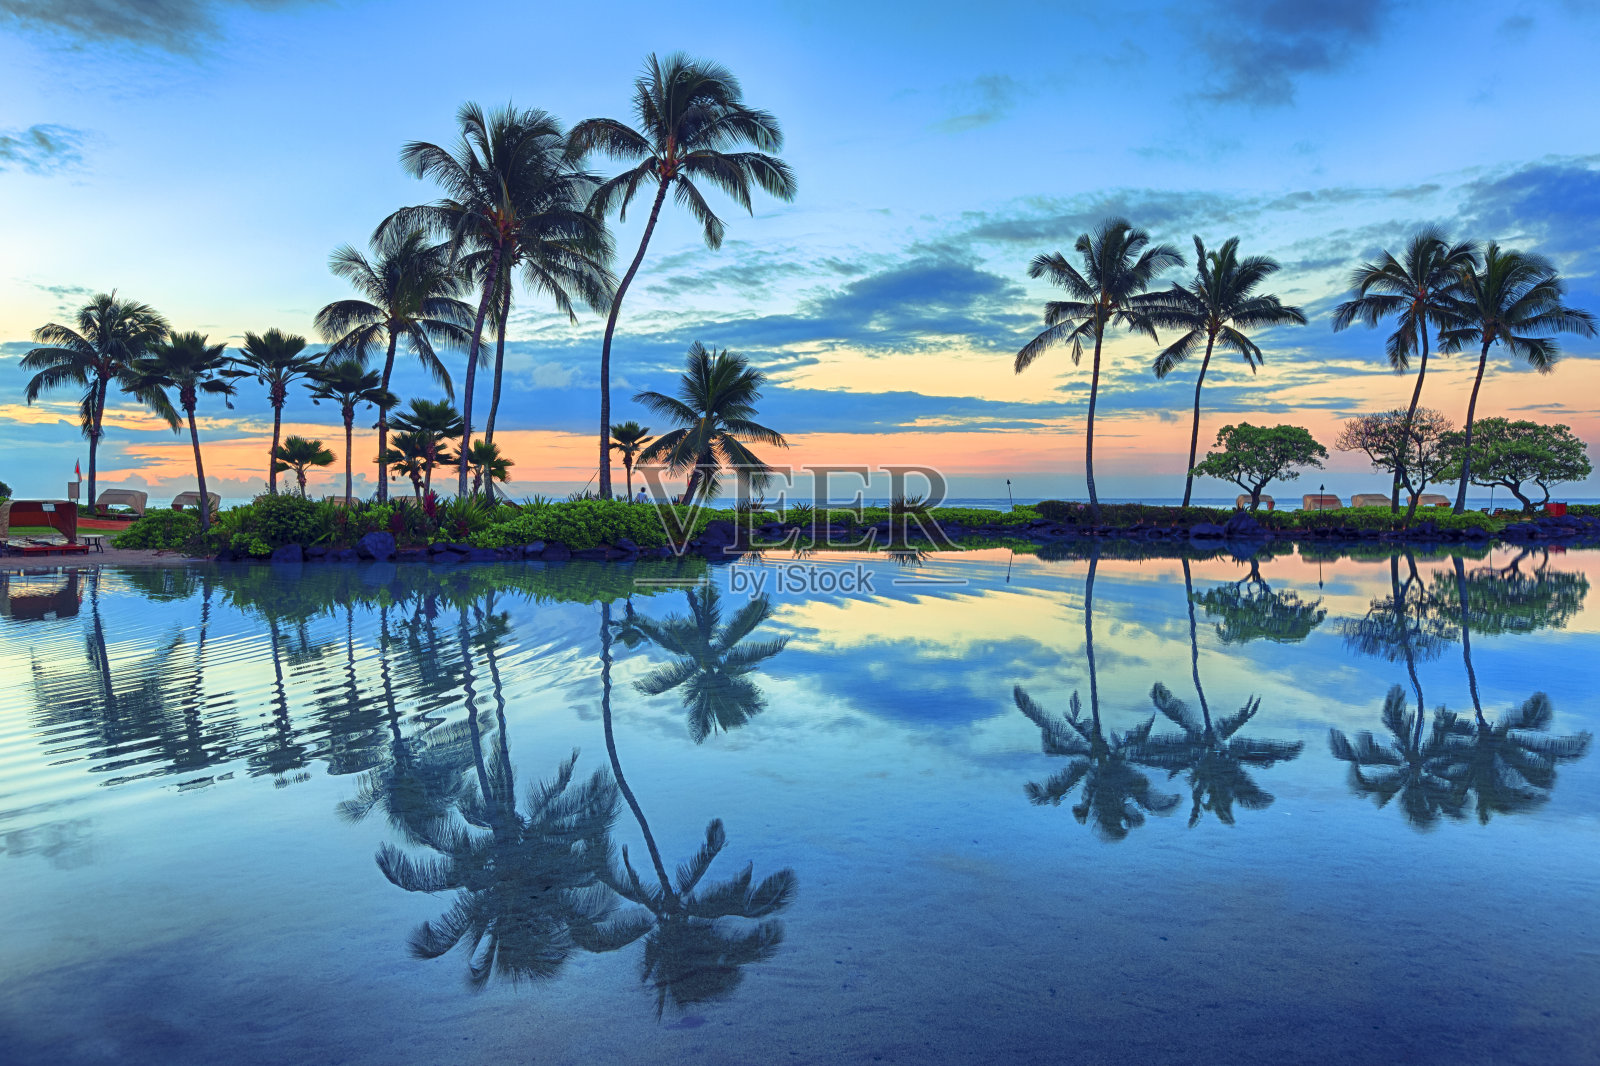 夏威夷考艾岛棕榈树后的日出照片摄影图片